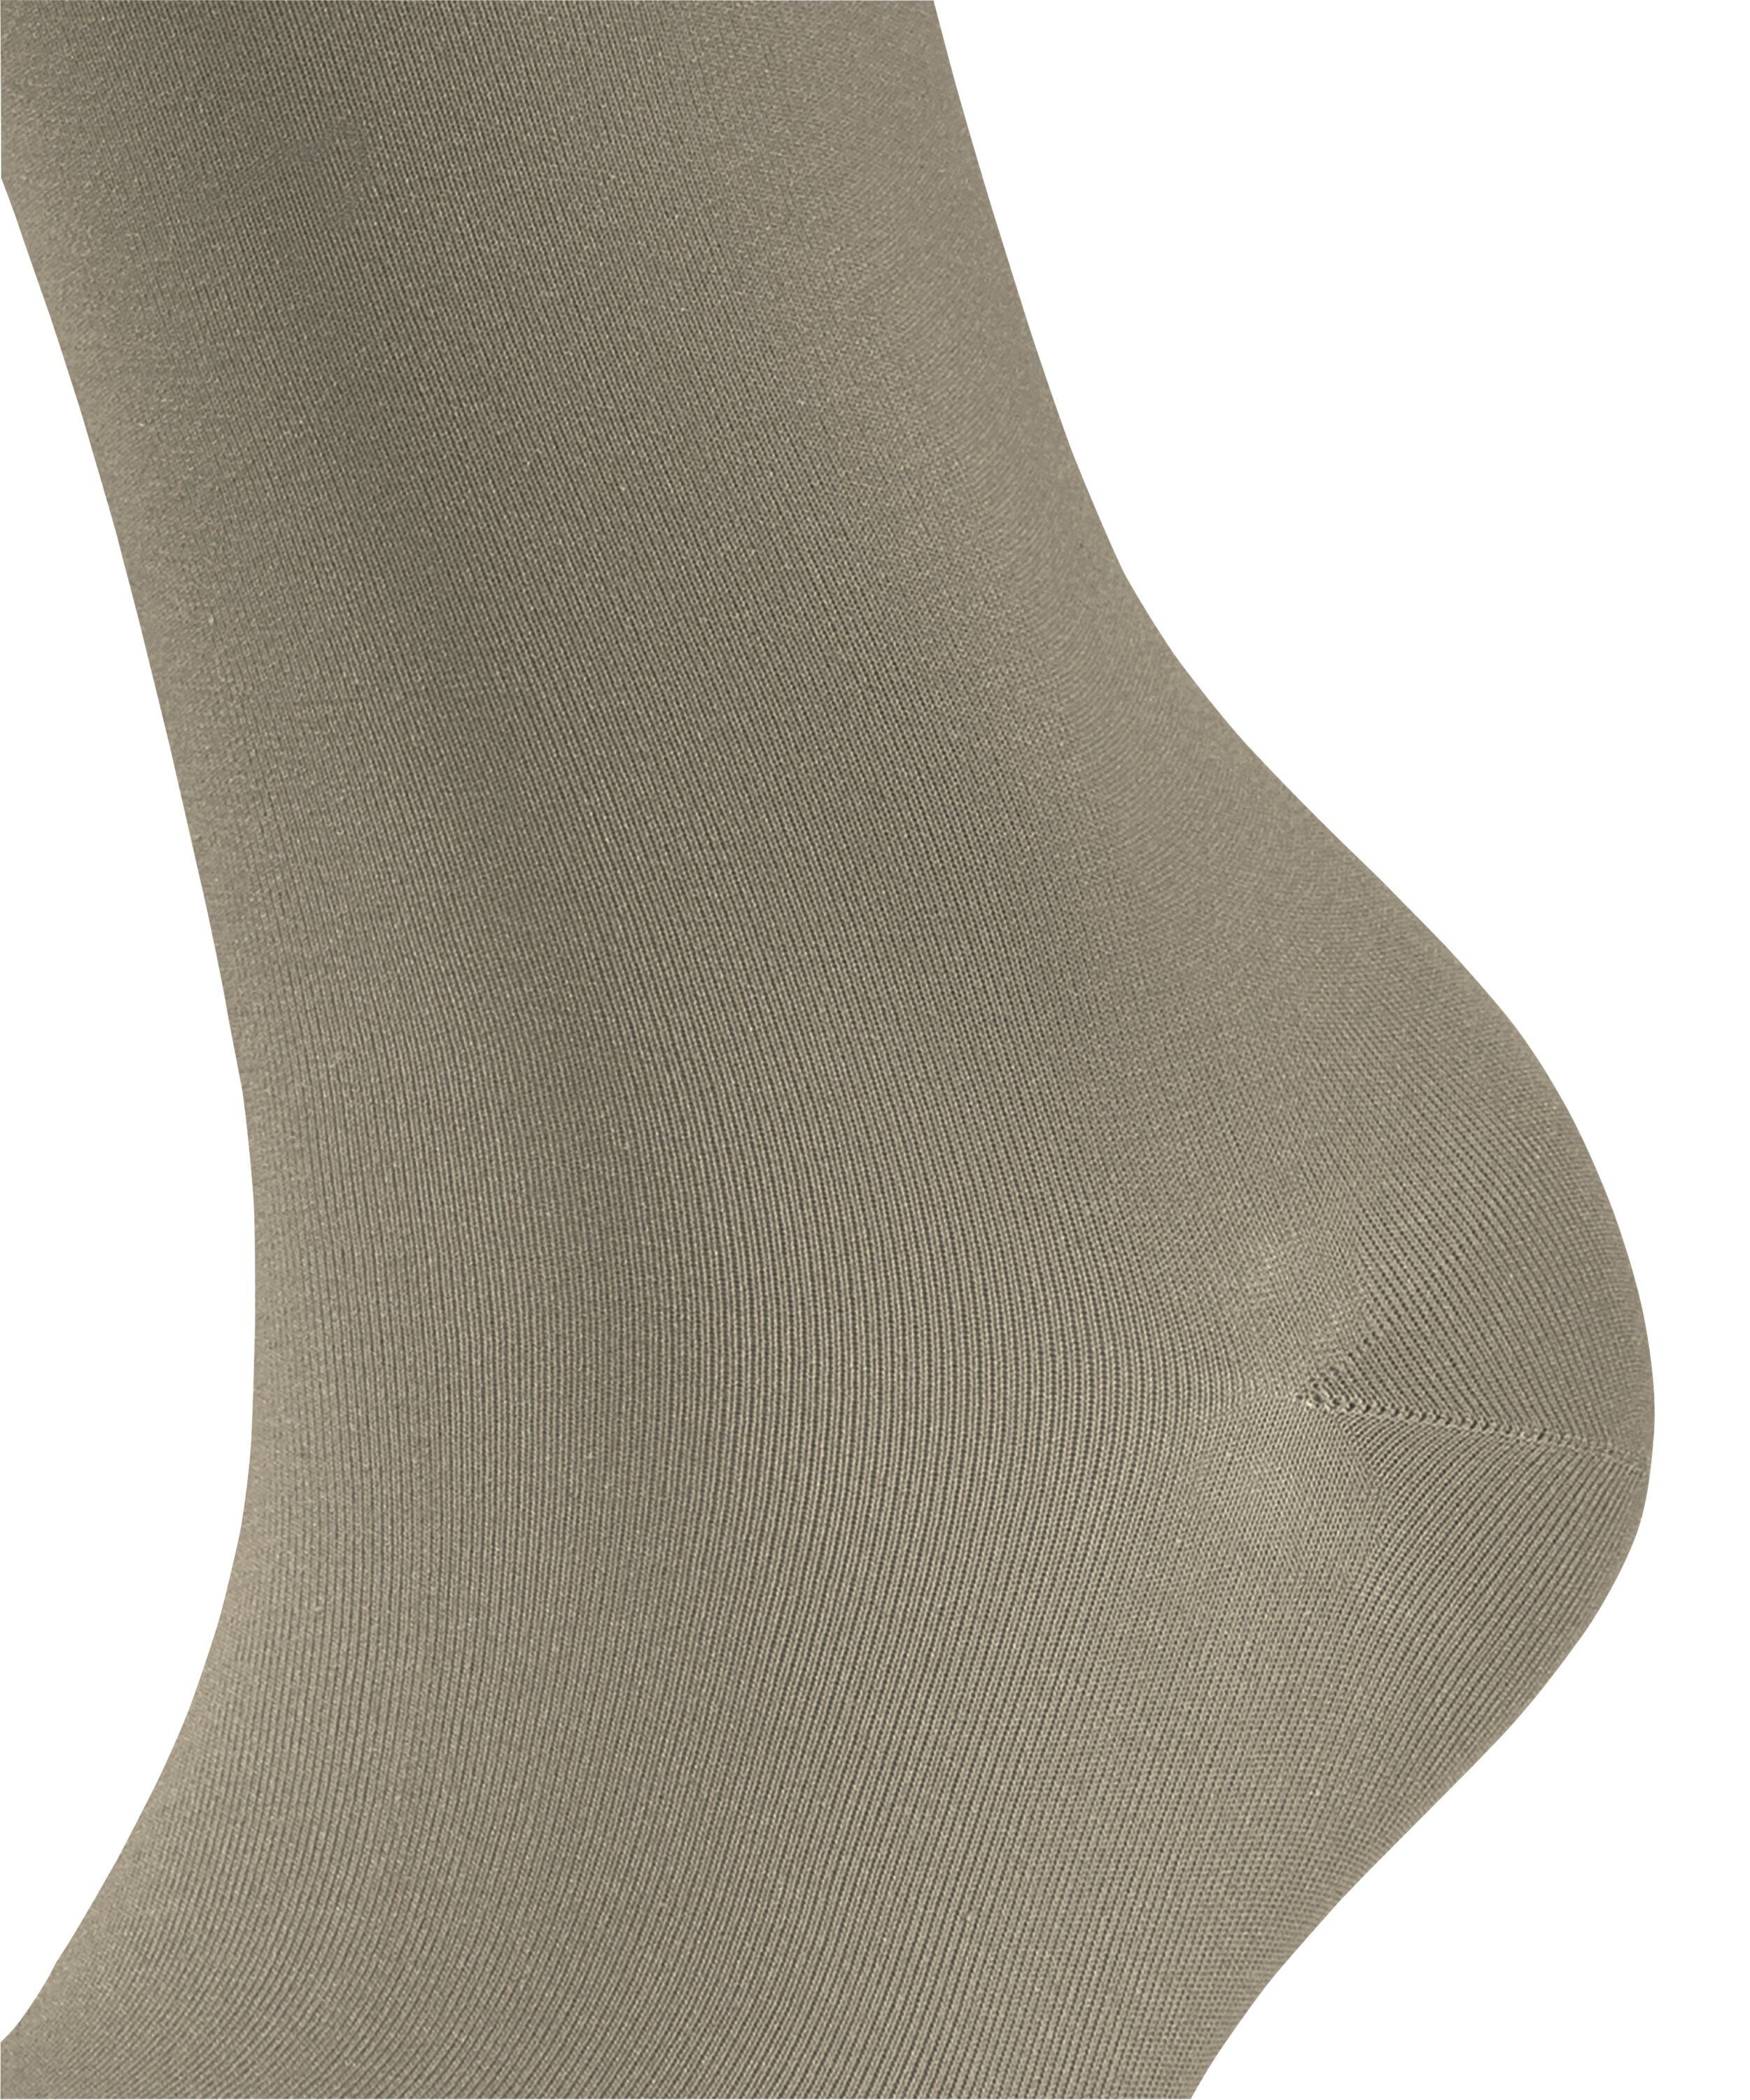 FALKE Socken Cotton Touch (1-Paar) pale (7110) khaki